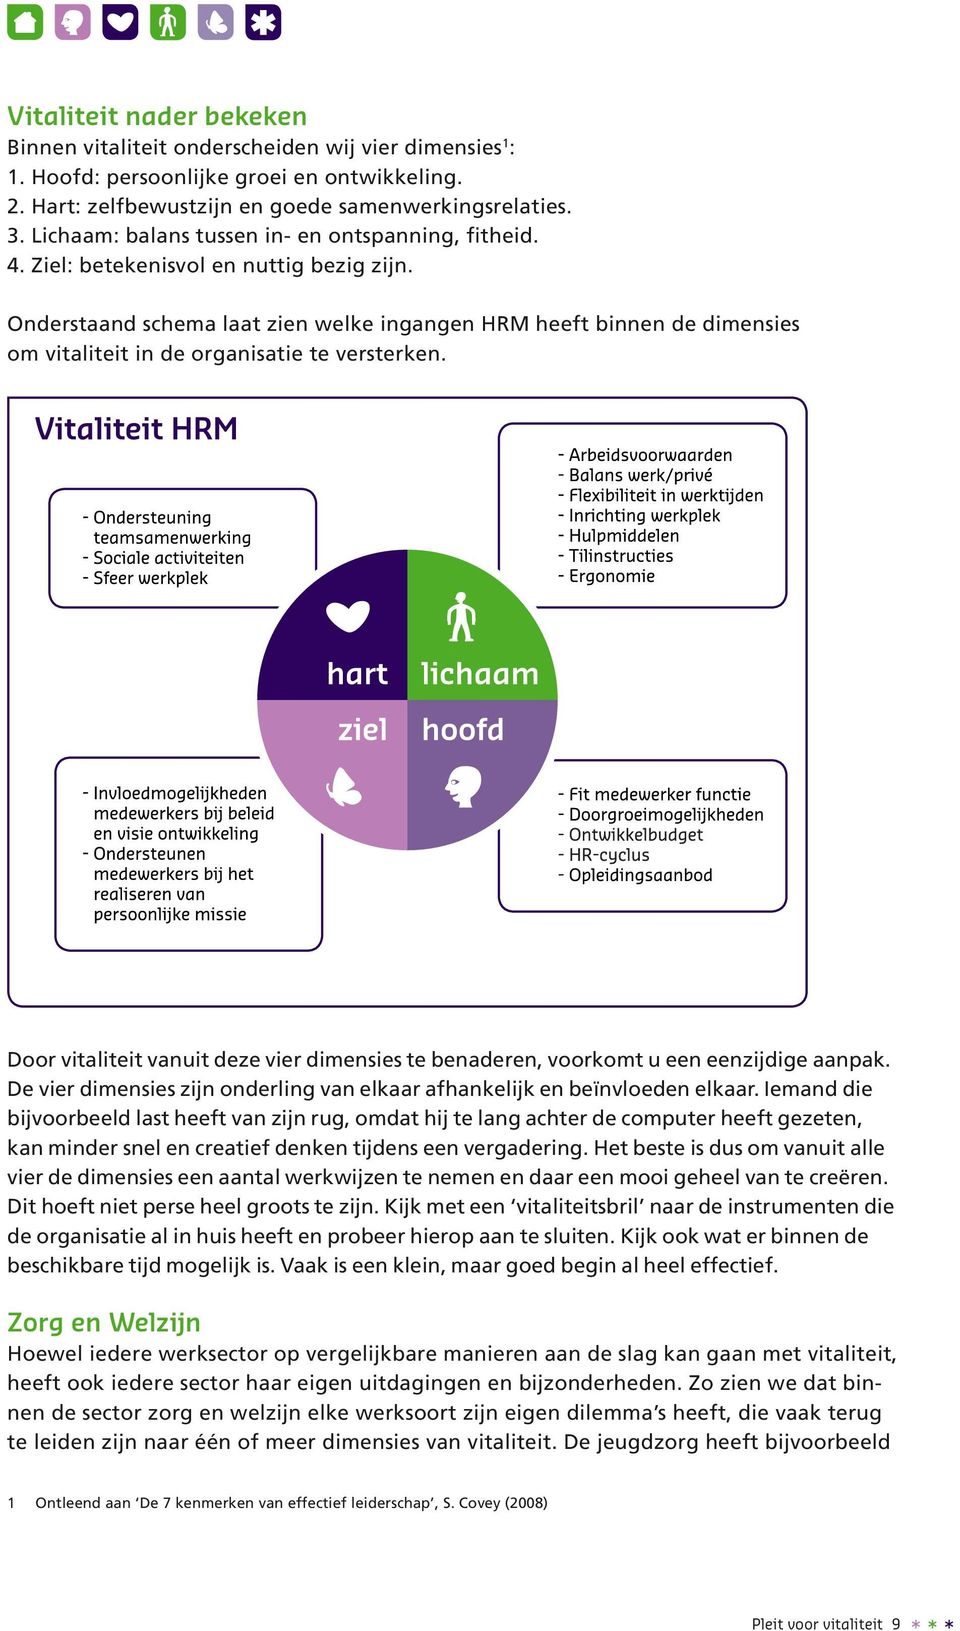 Onderstaand schema laat zien welke ingangen HRM heeft binnen de dimensies om vitaliteit in de organisatie te versterken.